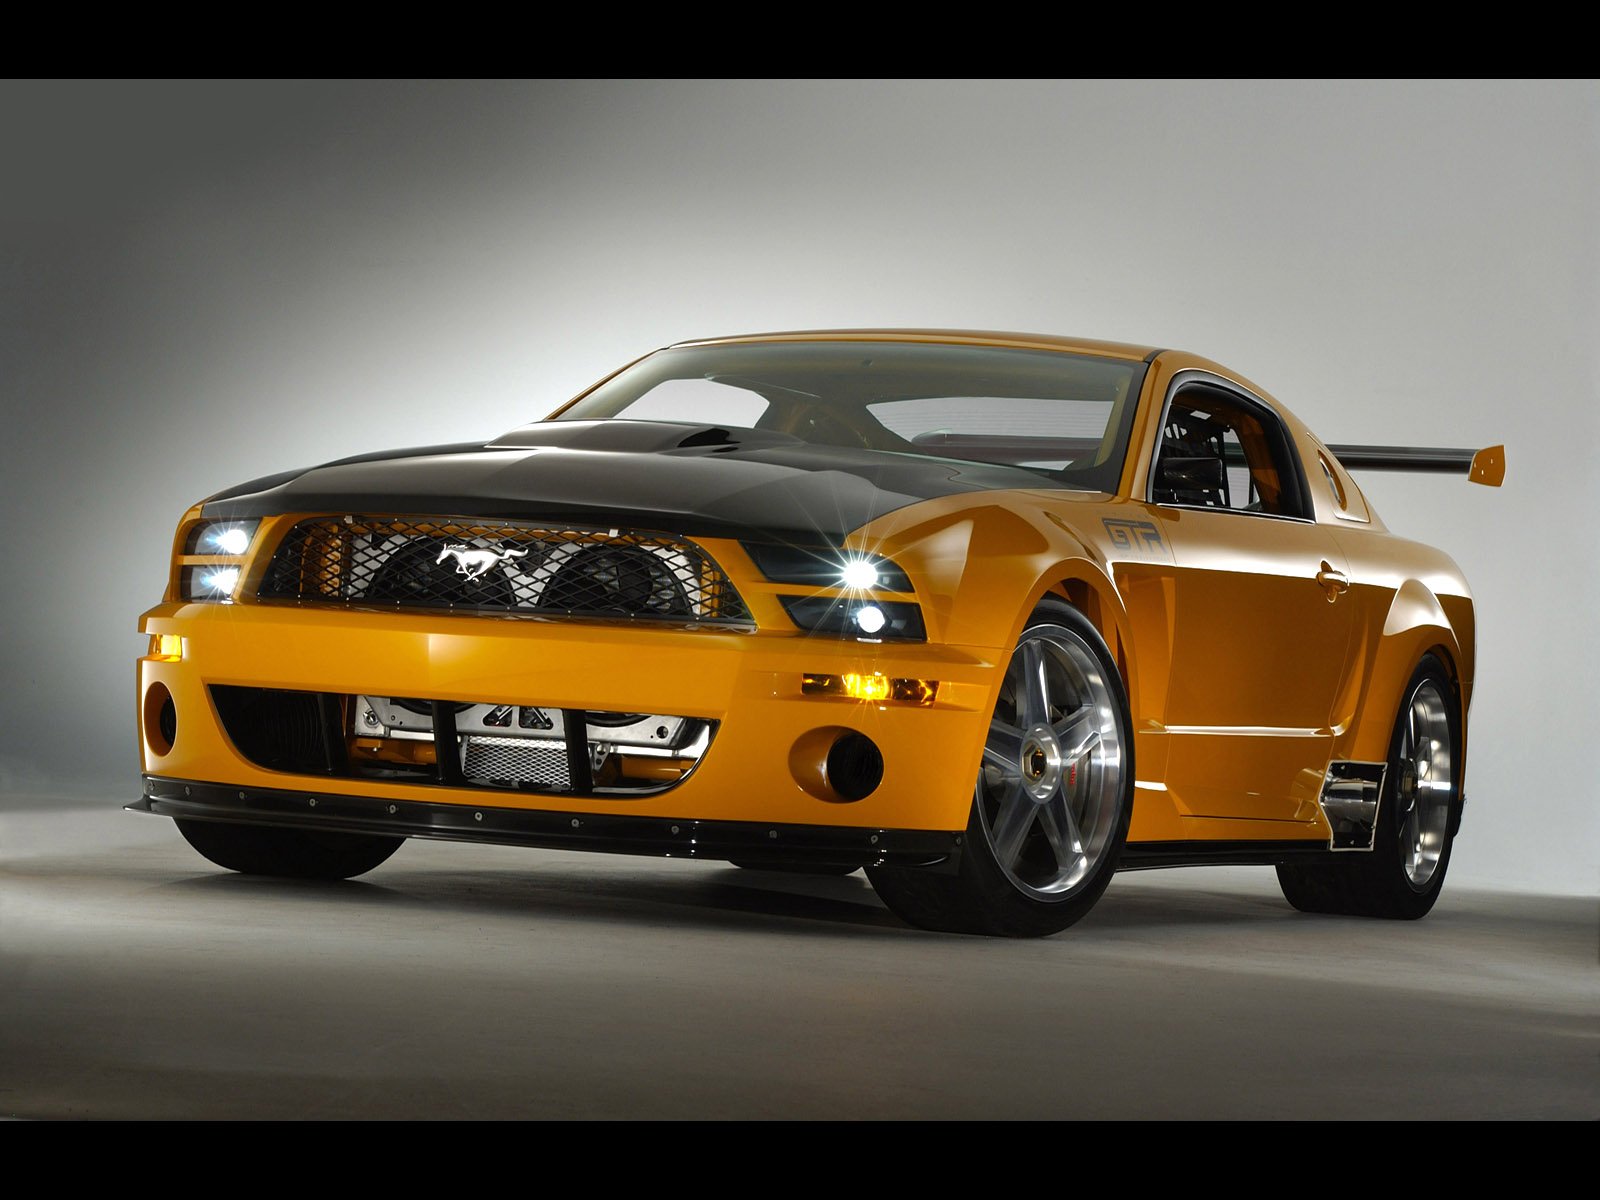 Kumpulan Modifikasi Mobil Sedan Mustang Terbaru Modifikasi Mobil